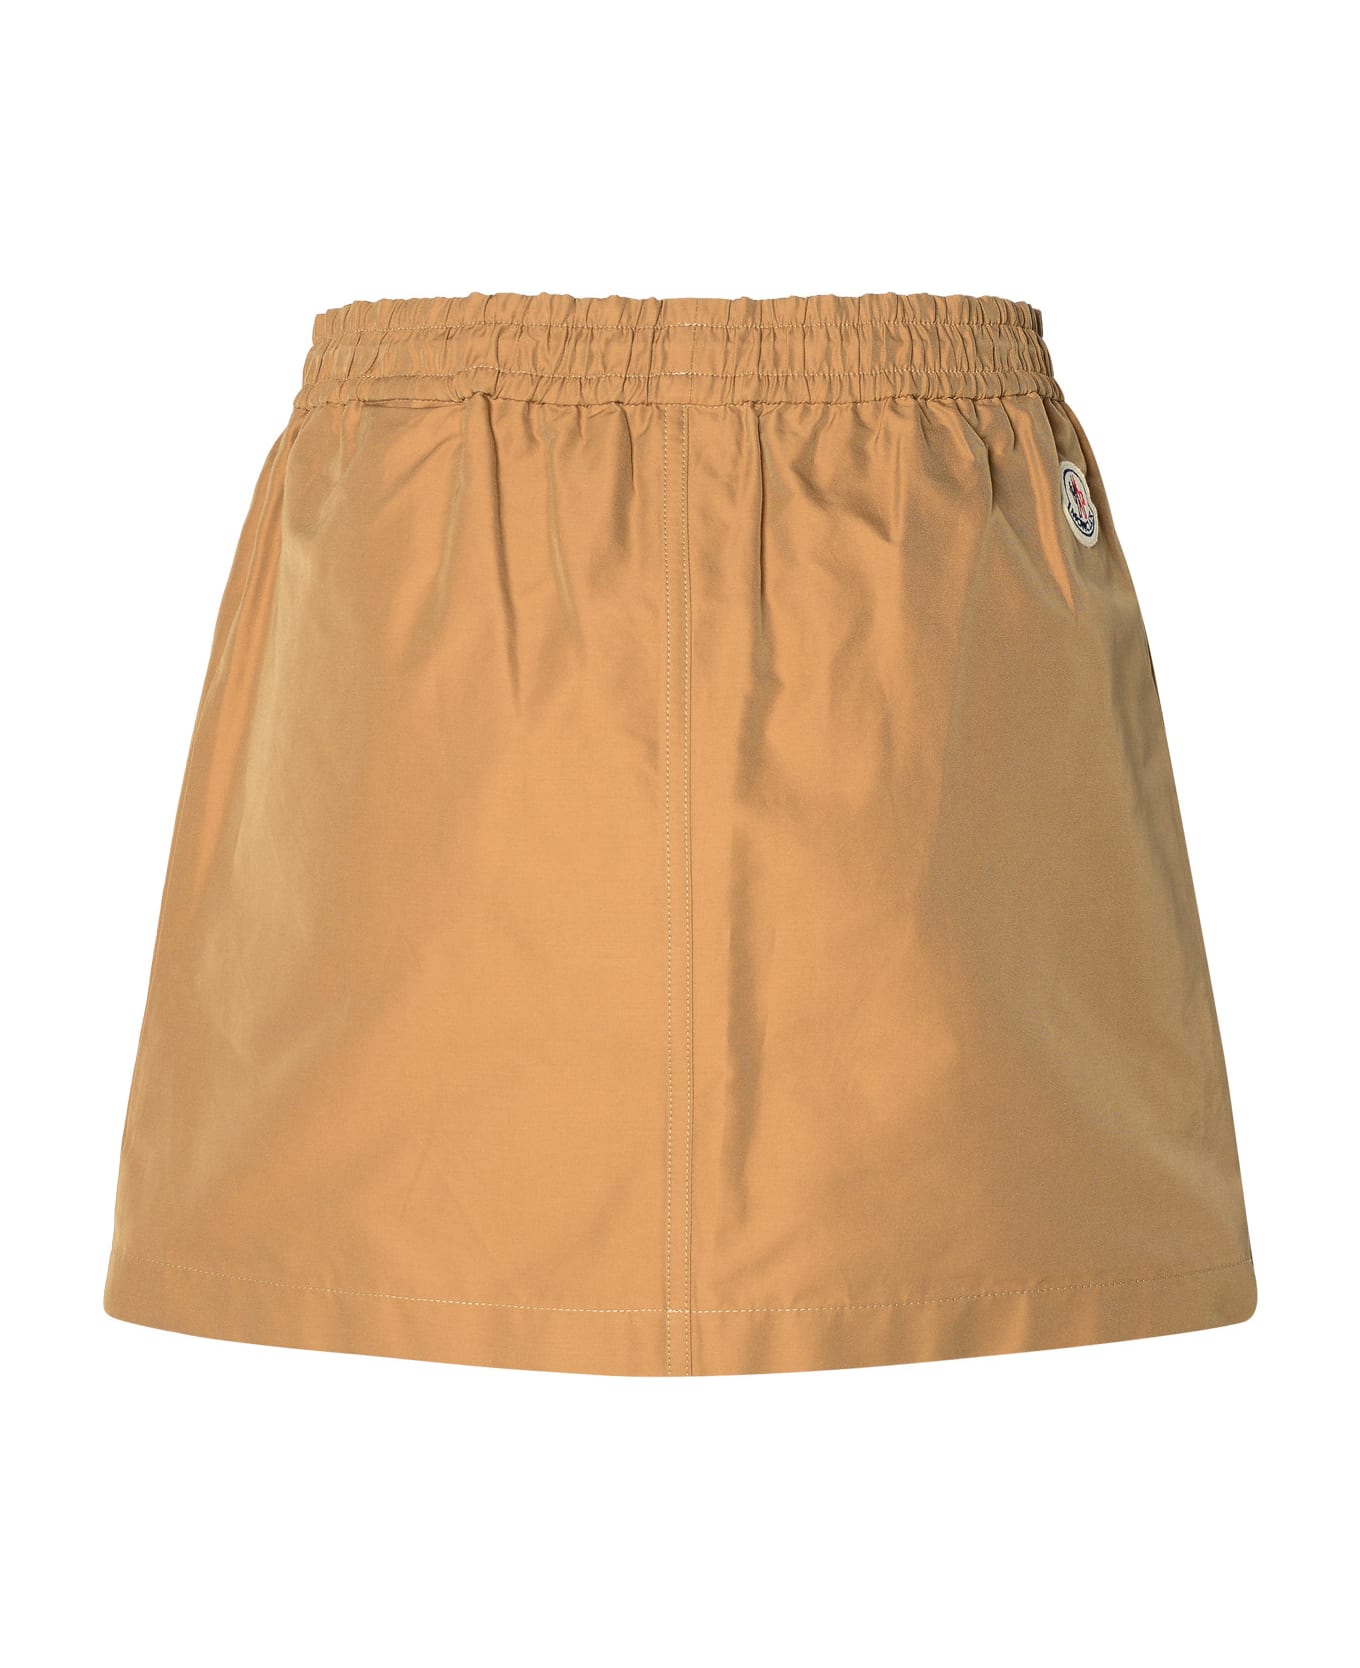 Moncler Cargo Miniskirt In Beige Cotton Blend - Beige